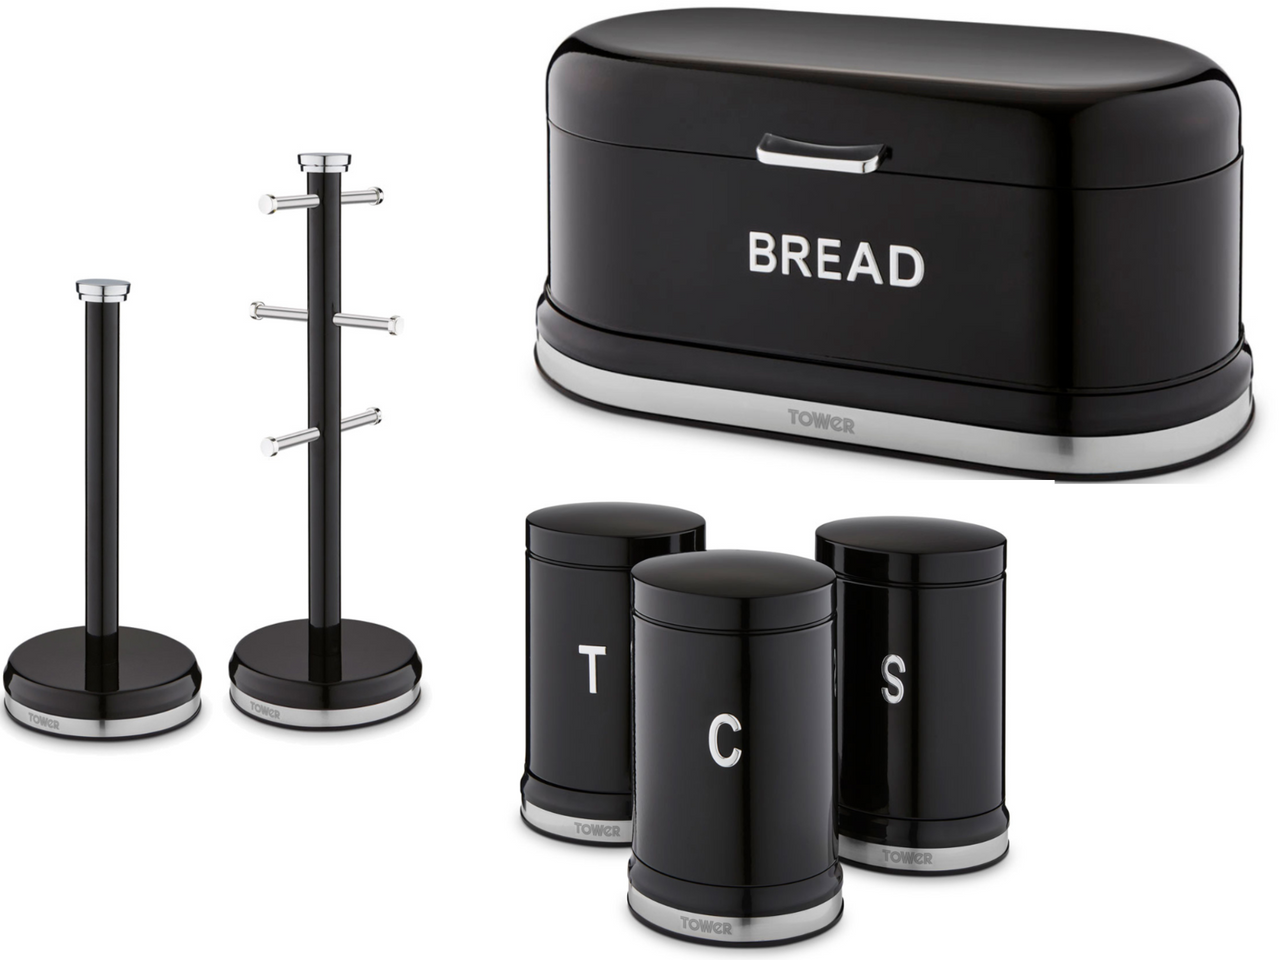 Tower Belle Noir Bread Bin Canisters Mug Tree Towel Pole Kitchen Set in Black